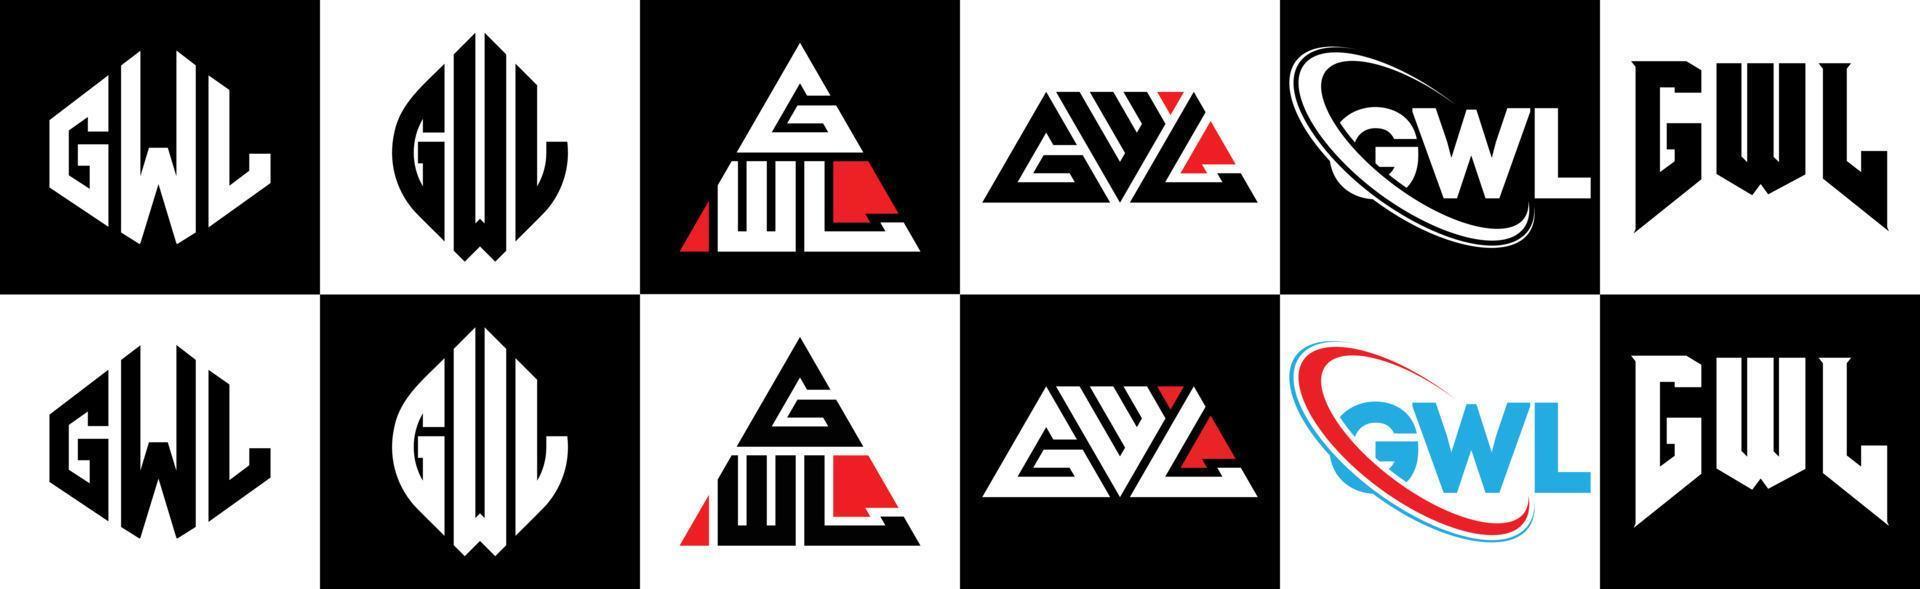 gwl-Buchstaben-Logo-Design in sechs Stilen. gwl Polygon, Kreis, Dreieck, Sechseck, flacher und einfacher Stil mit schwarz-weißem Buchstabenlogo in einer Zeichenfläche. gwl minimalistisches und klassisches Logo vektor